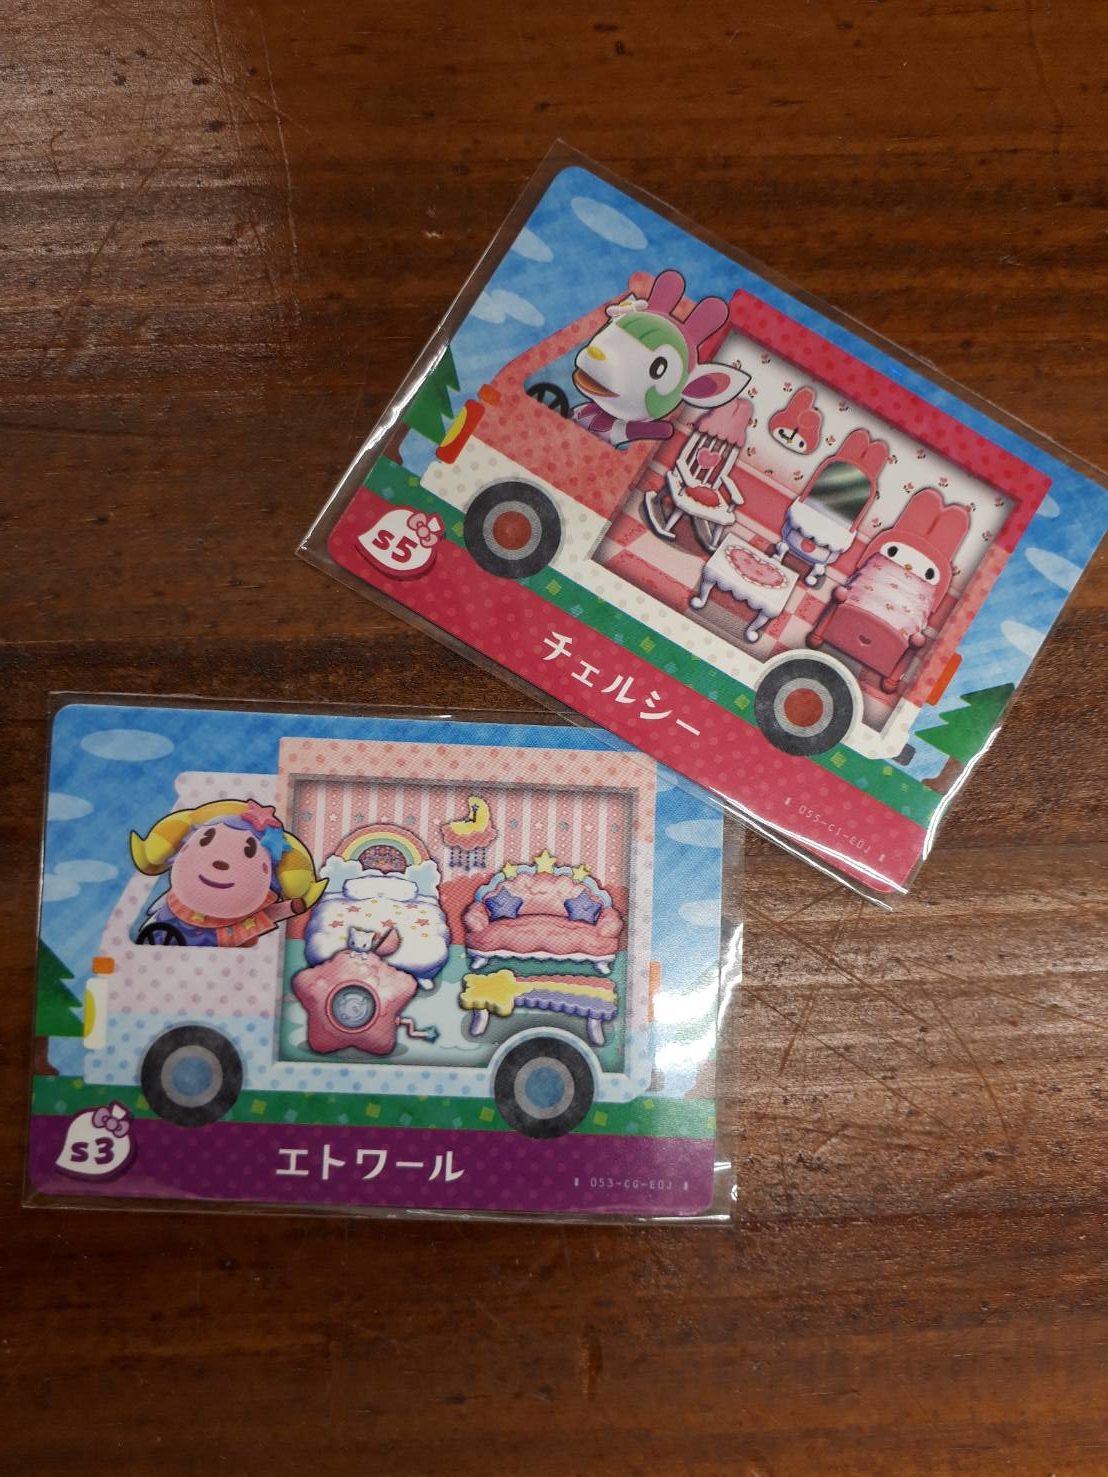 5/31 買い取りました！ amiiboカード とびだせどうぶうの森×サンリオキャラクターズ コラボカード買取させていただきました！ #ゲーム